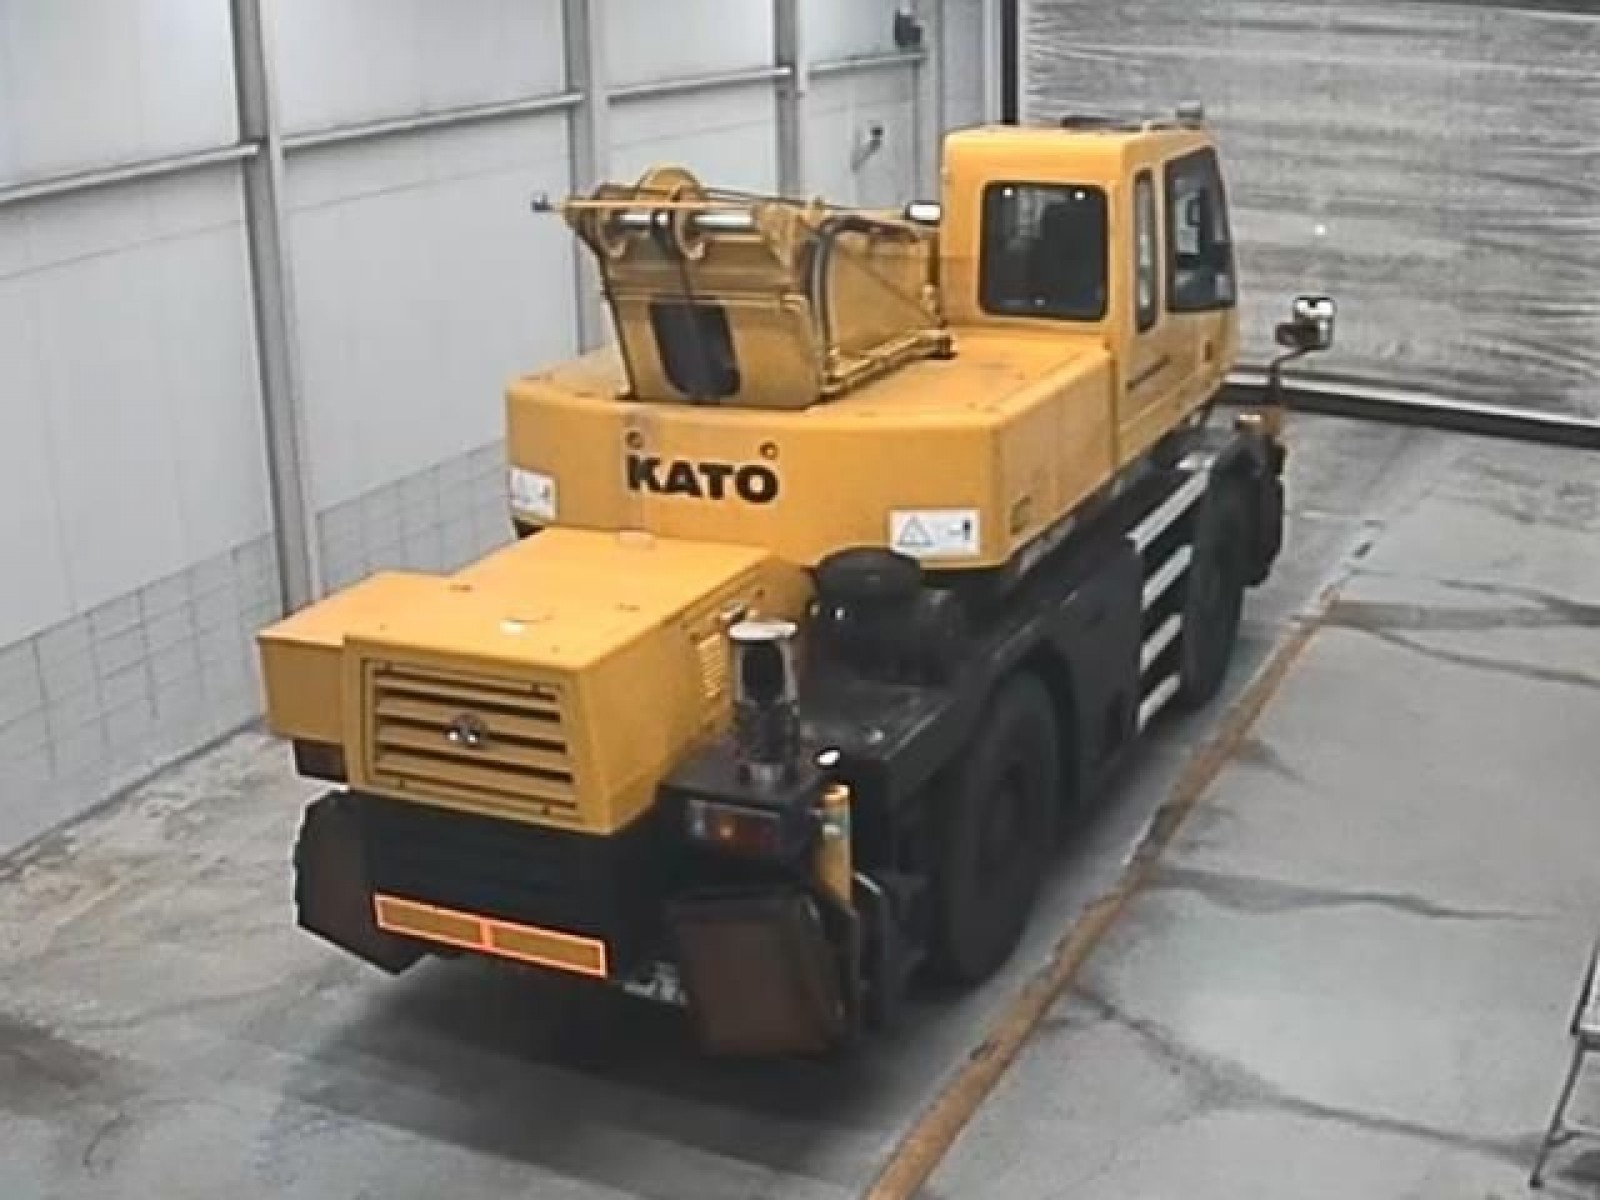 Kato Crane KR248 2007